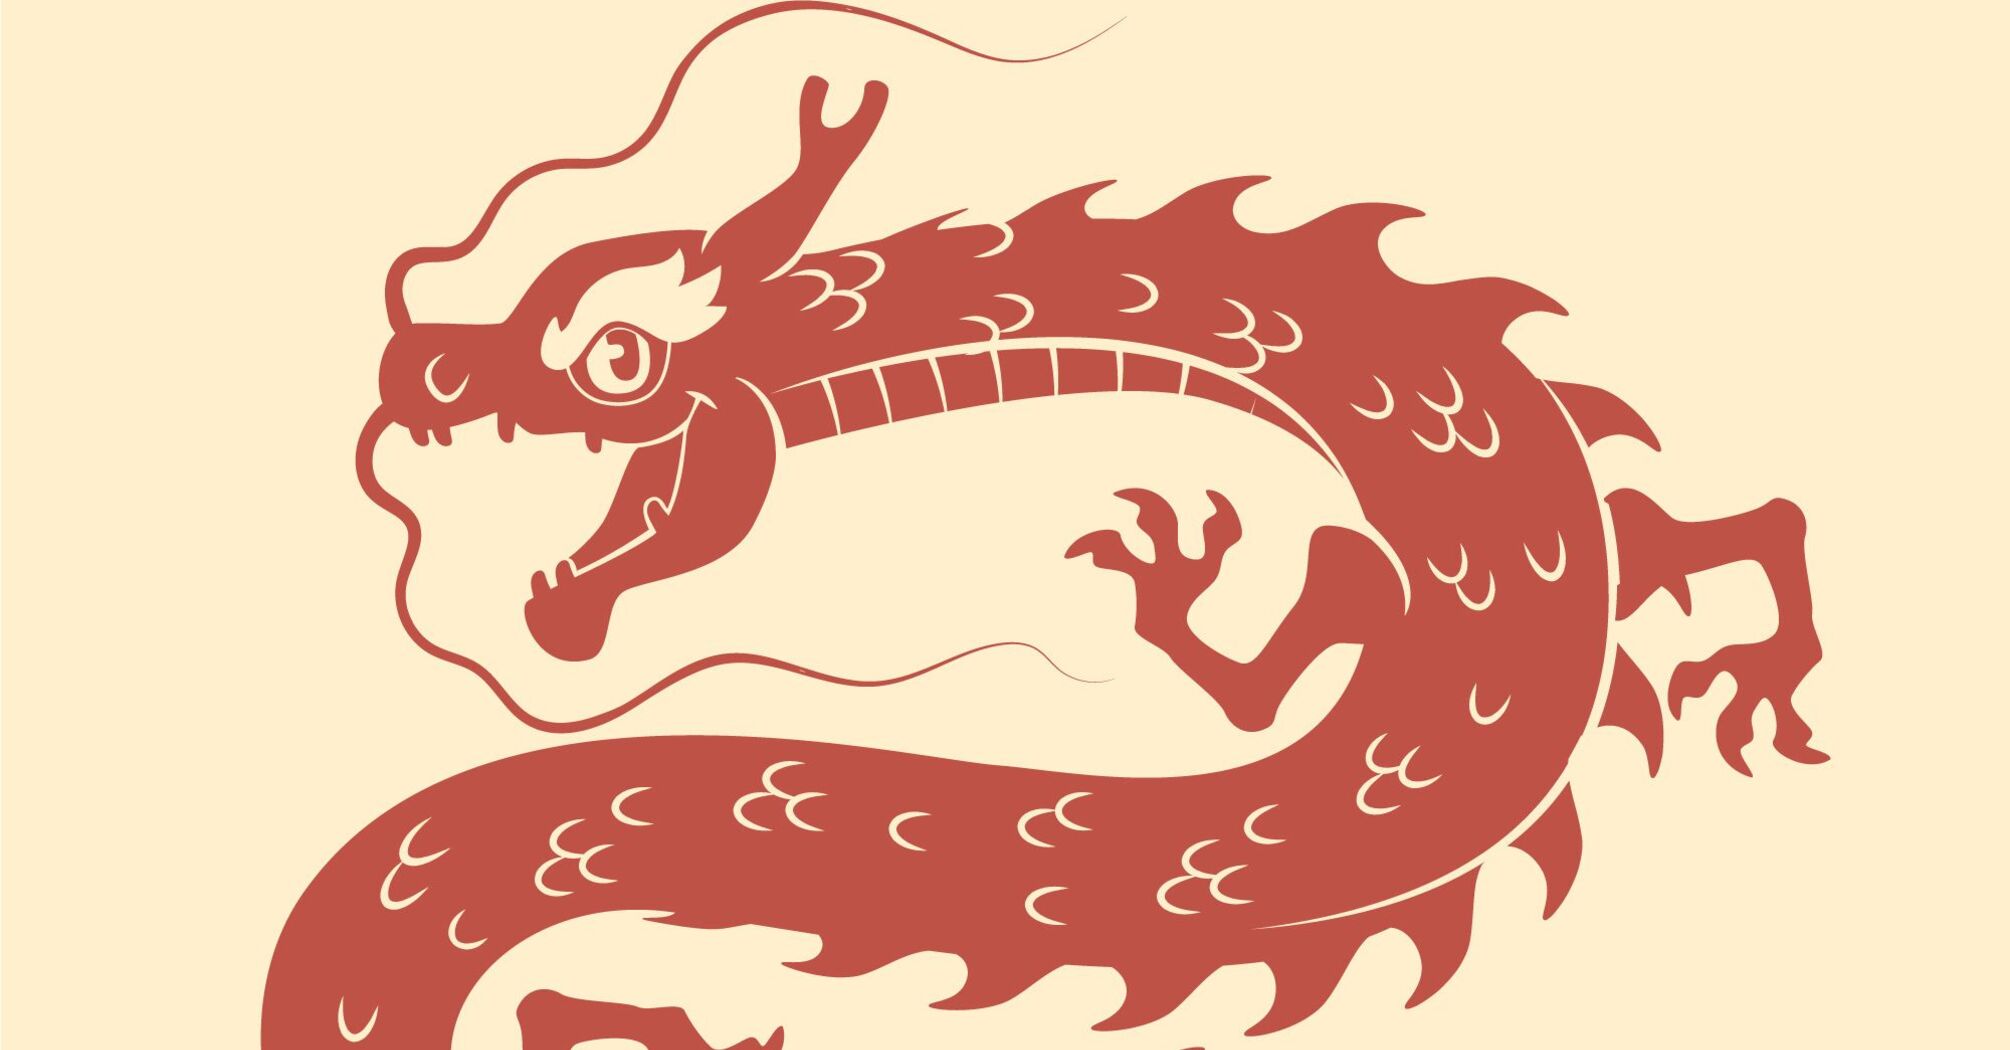 Ожидается день эмоциональных трудностей: Китайский гороскоп на 8 февраля